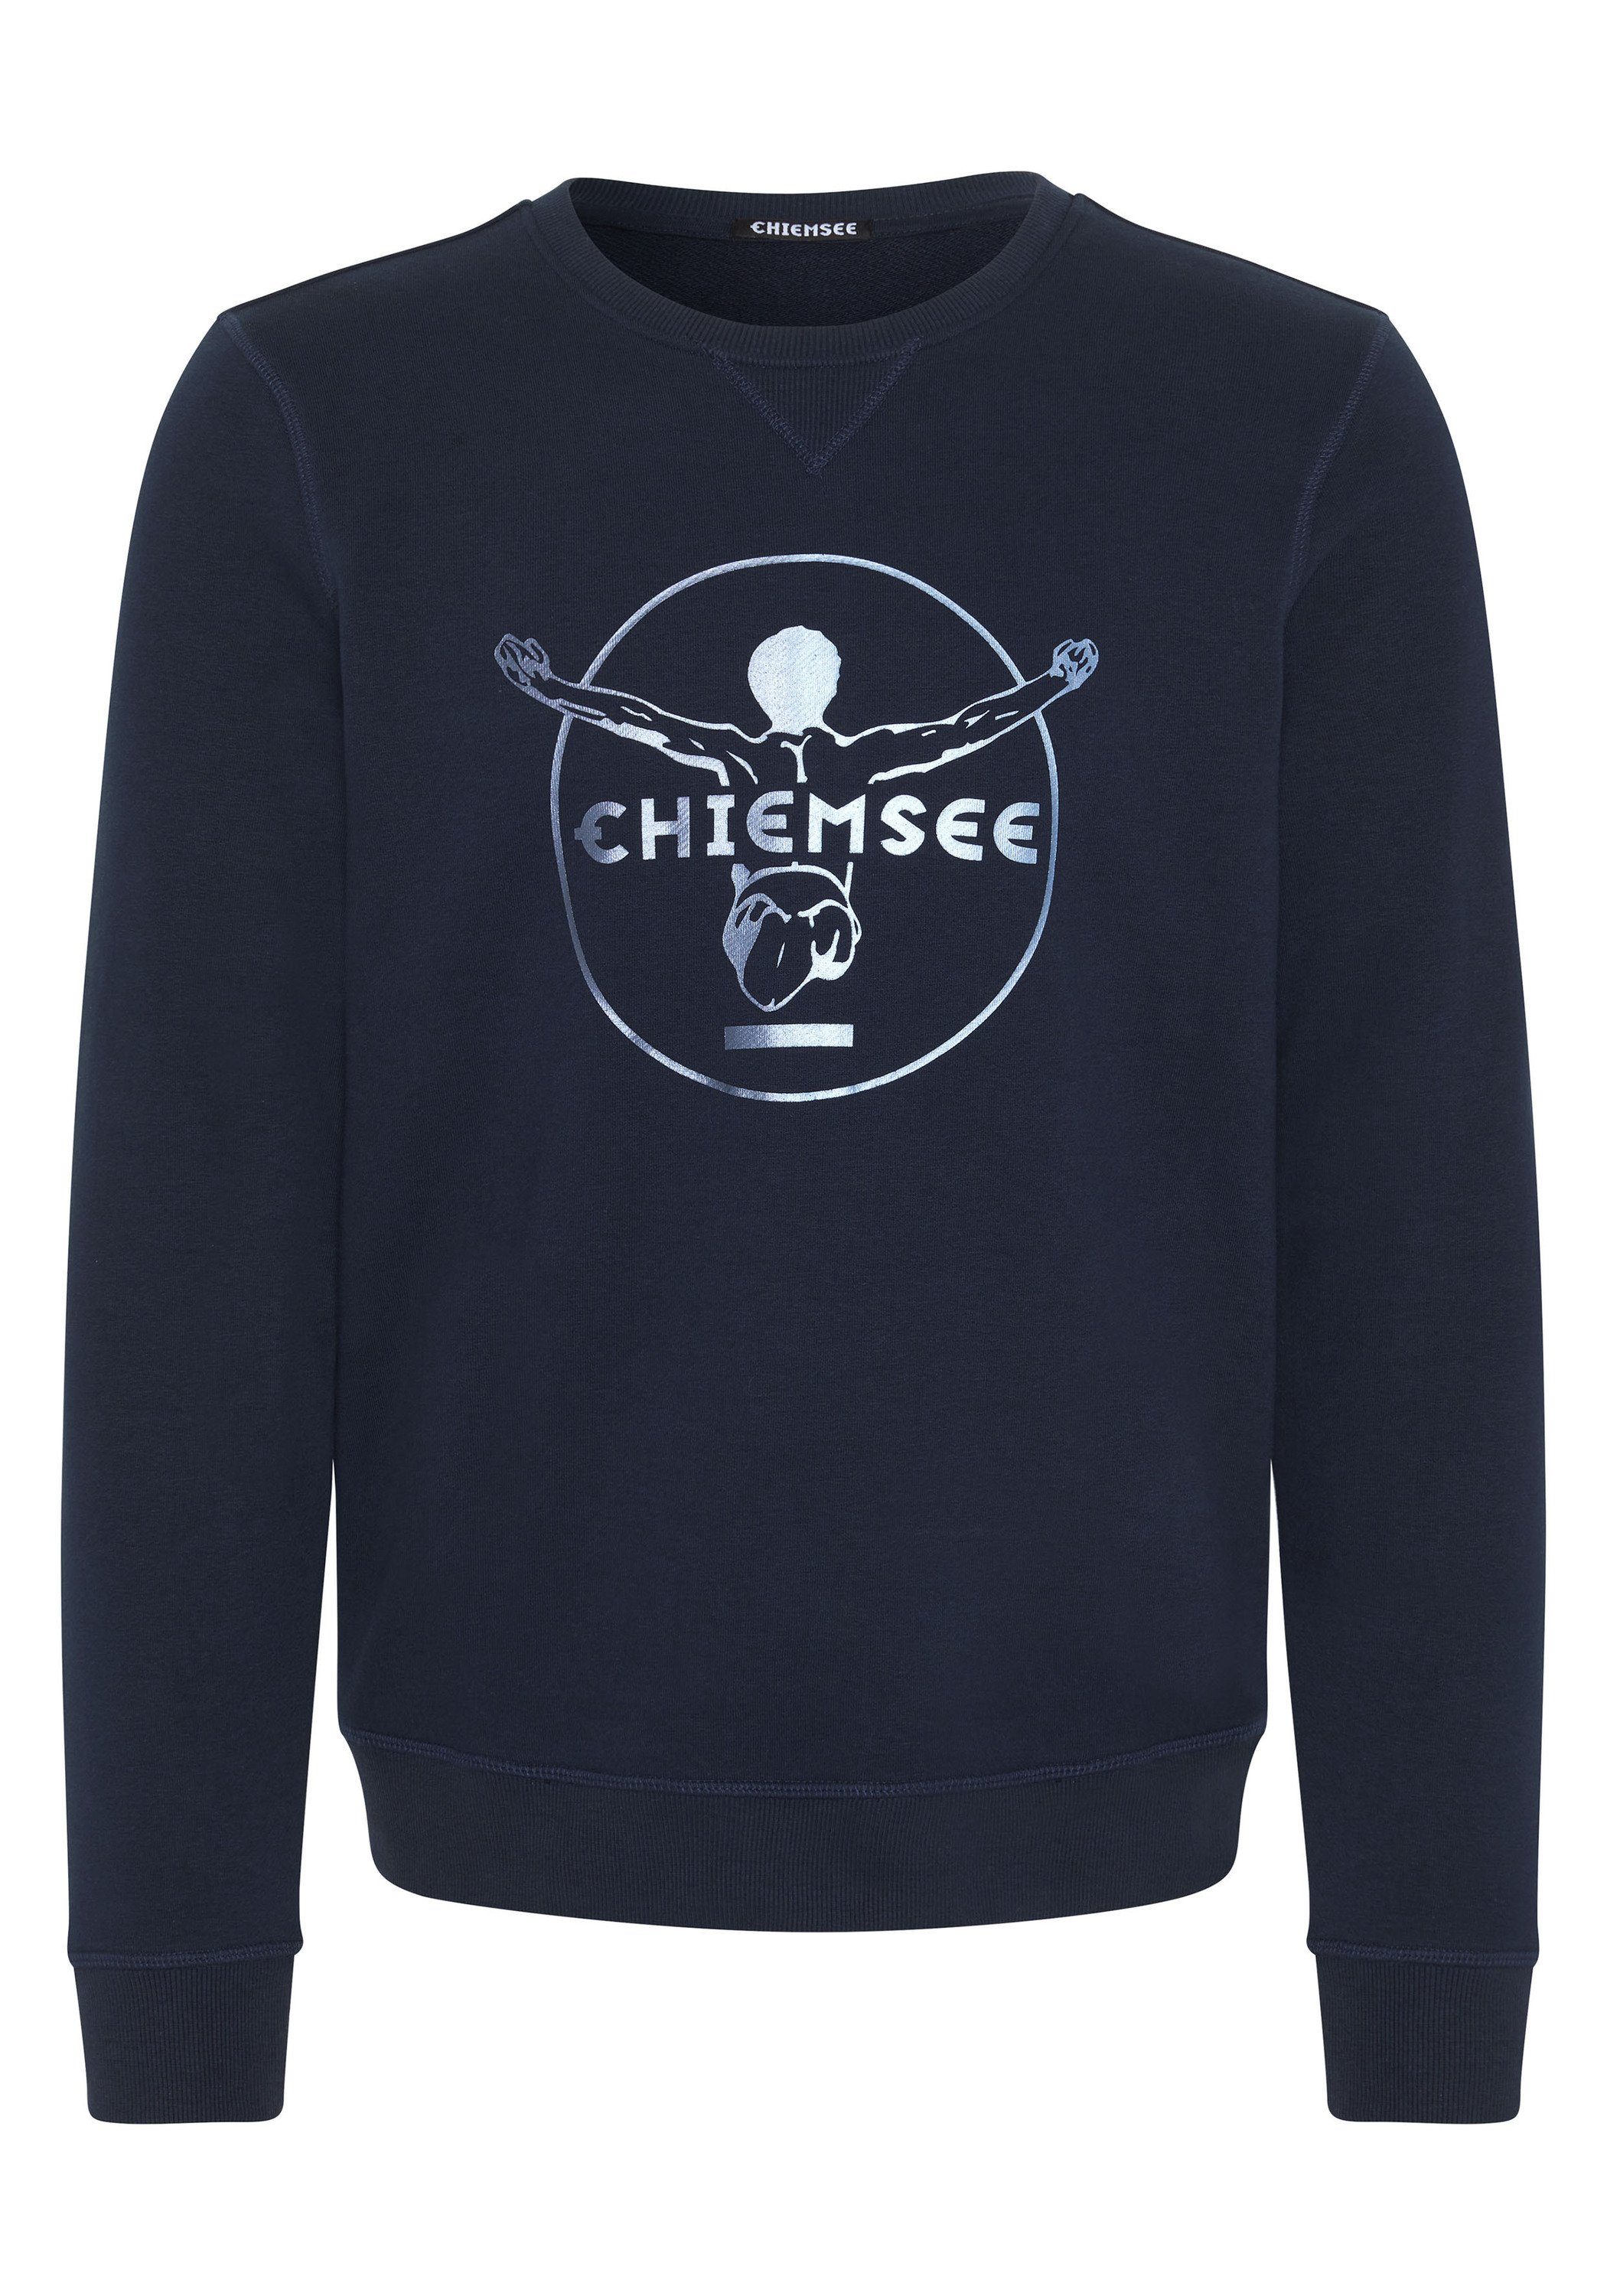 dunkel im blau 1 Chiemsee Label-Look Sweater Sweatshirt